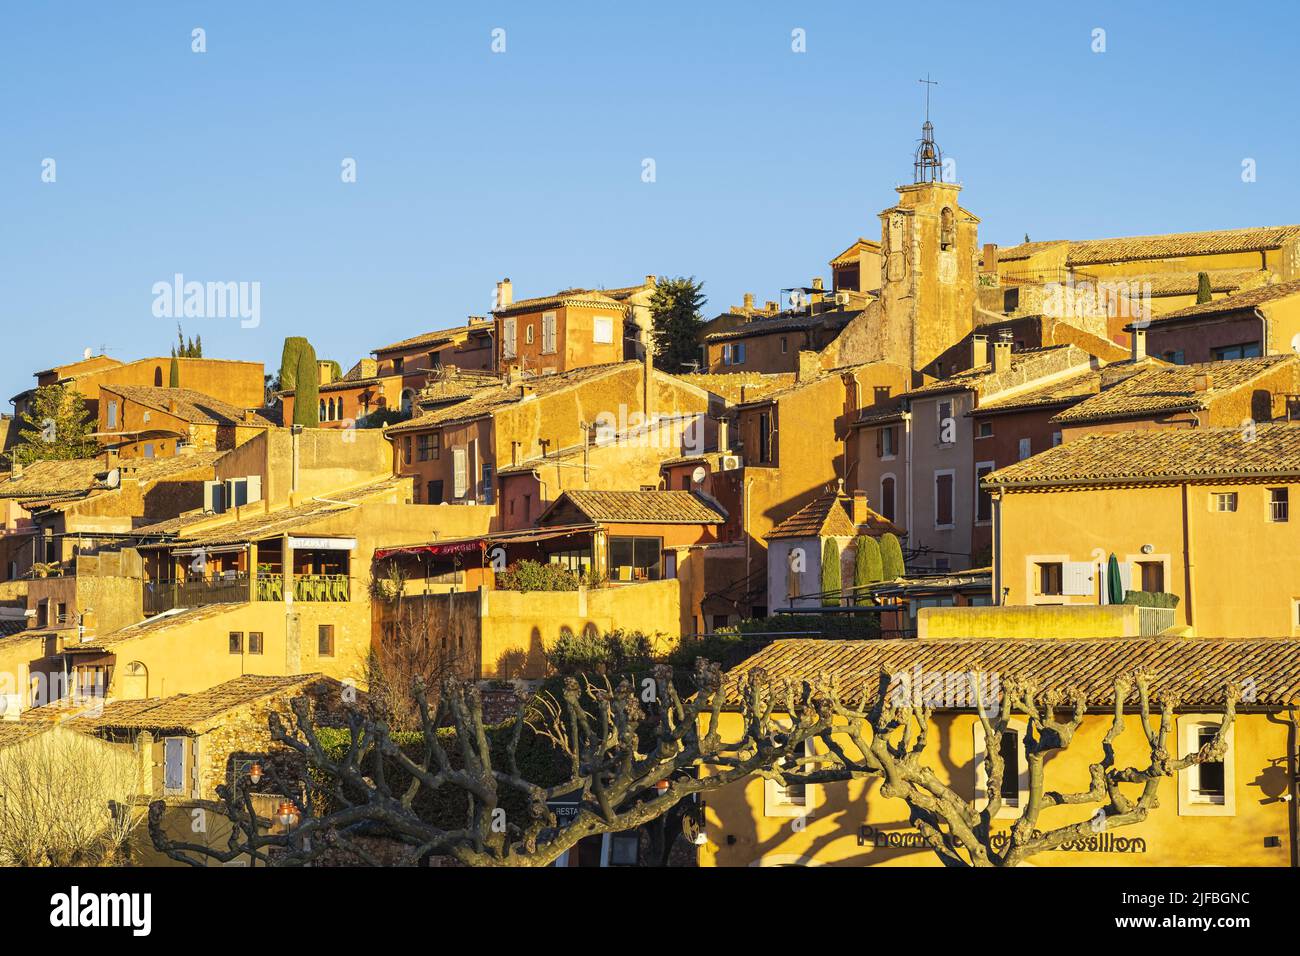 Frankreich, Vaucluse, regionaler Naturpark Luberon, Roussillon, gekennzeichnet mit Les Plus Beaux Villages de France (die schönsten Dörfer Frankreichs) Stockfoto